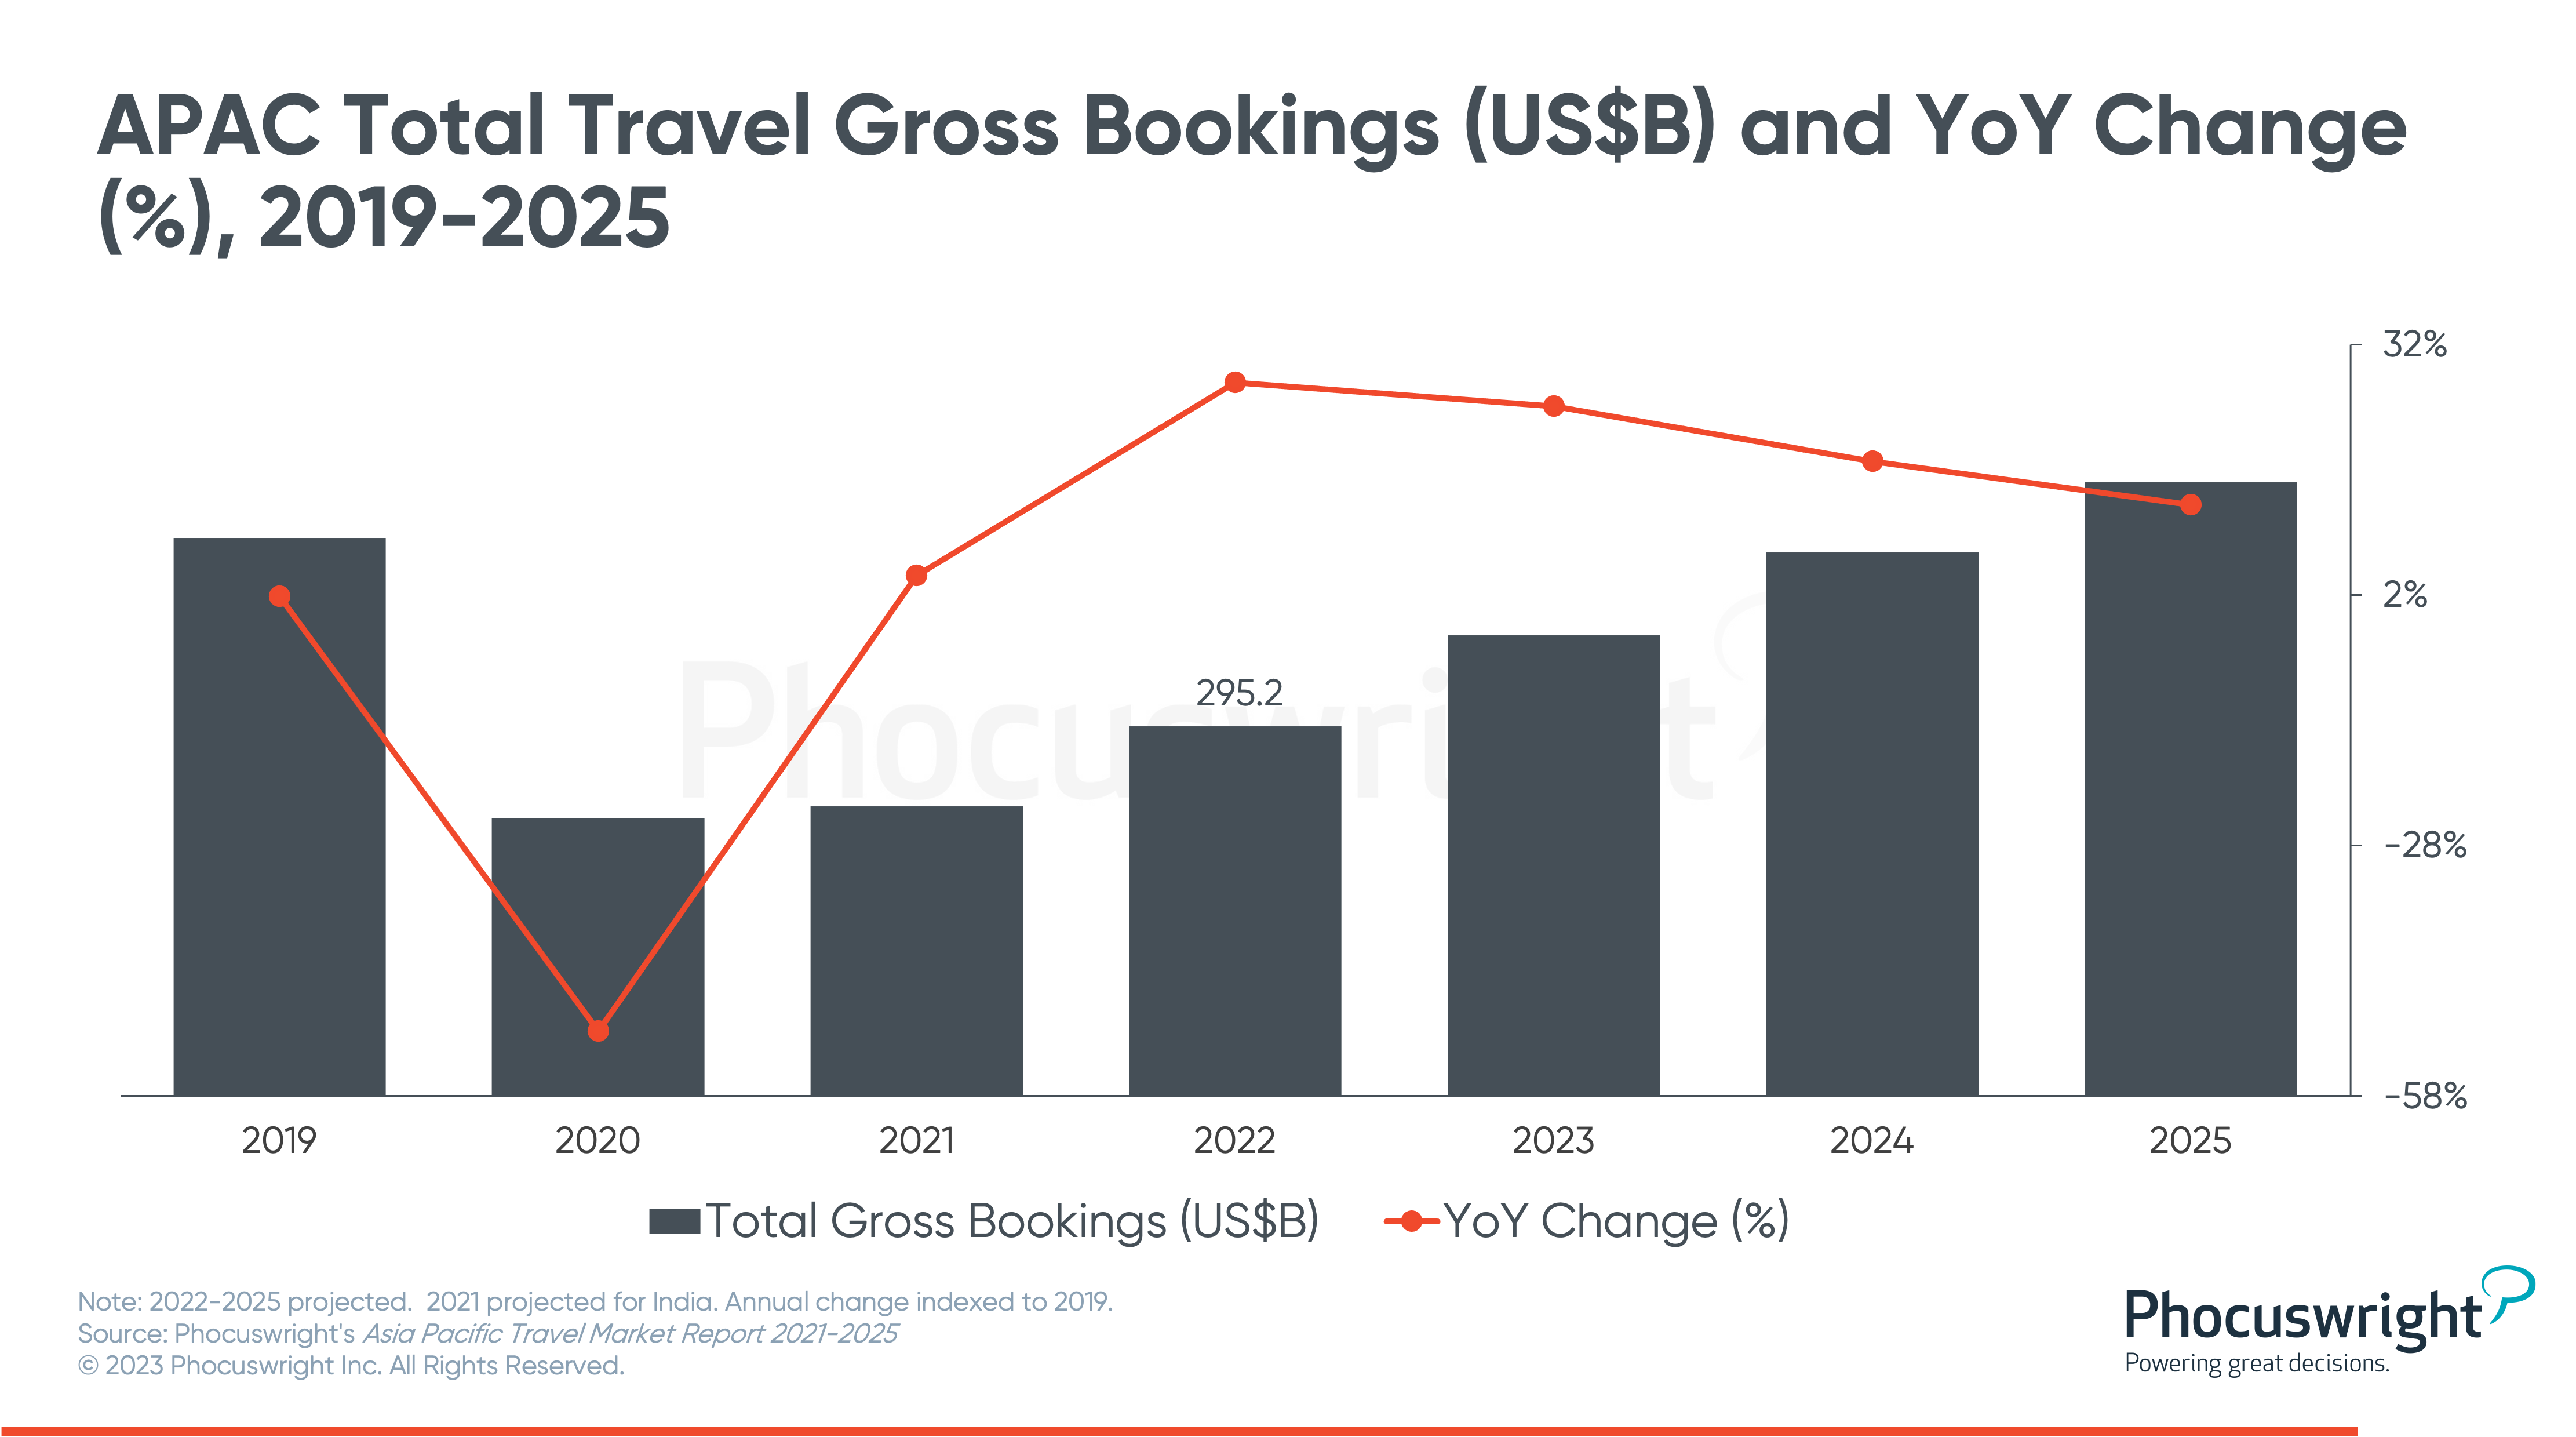 economy bookings travel